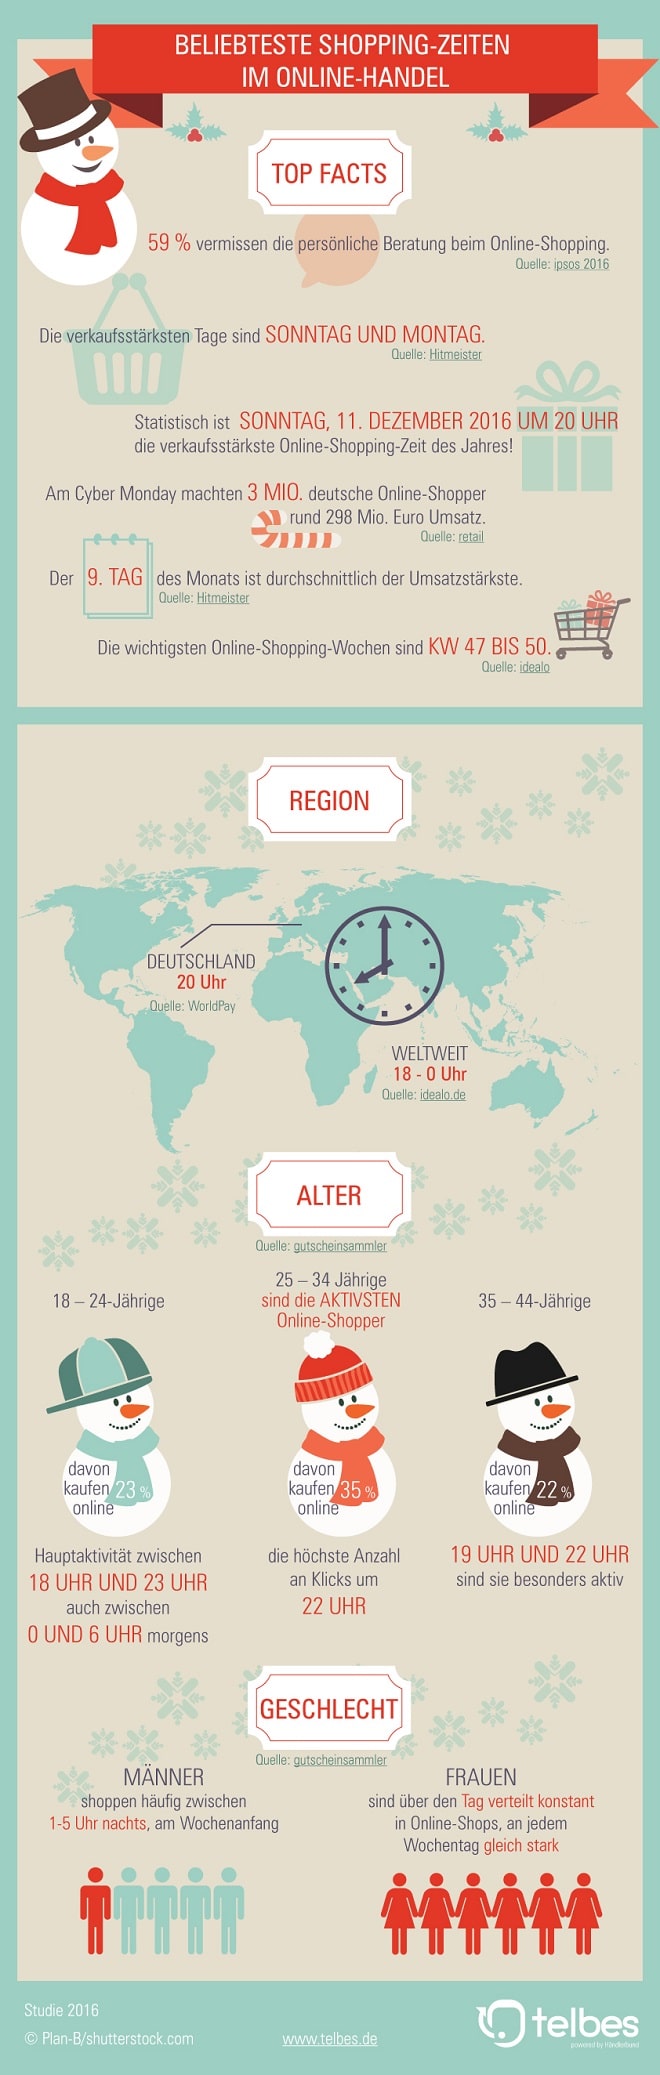 shoppingzeiten_infografik